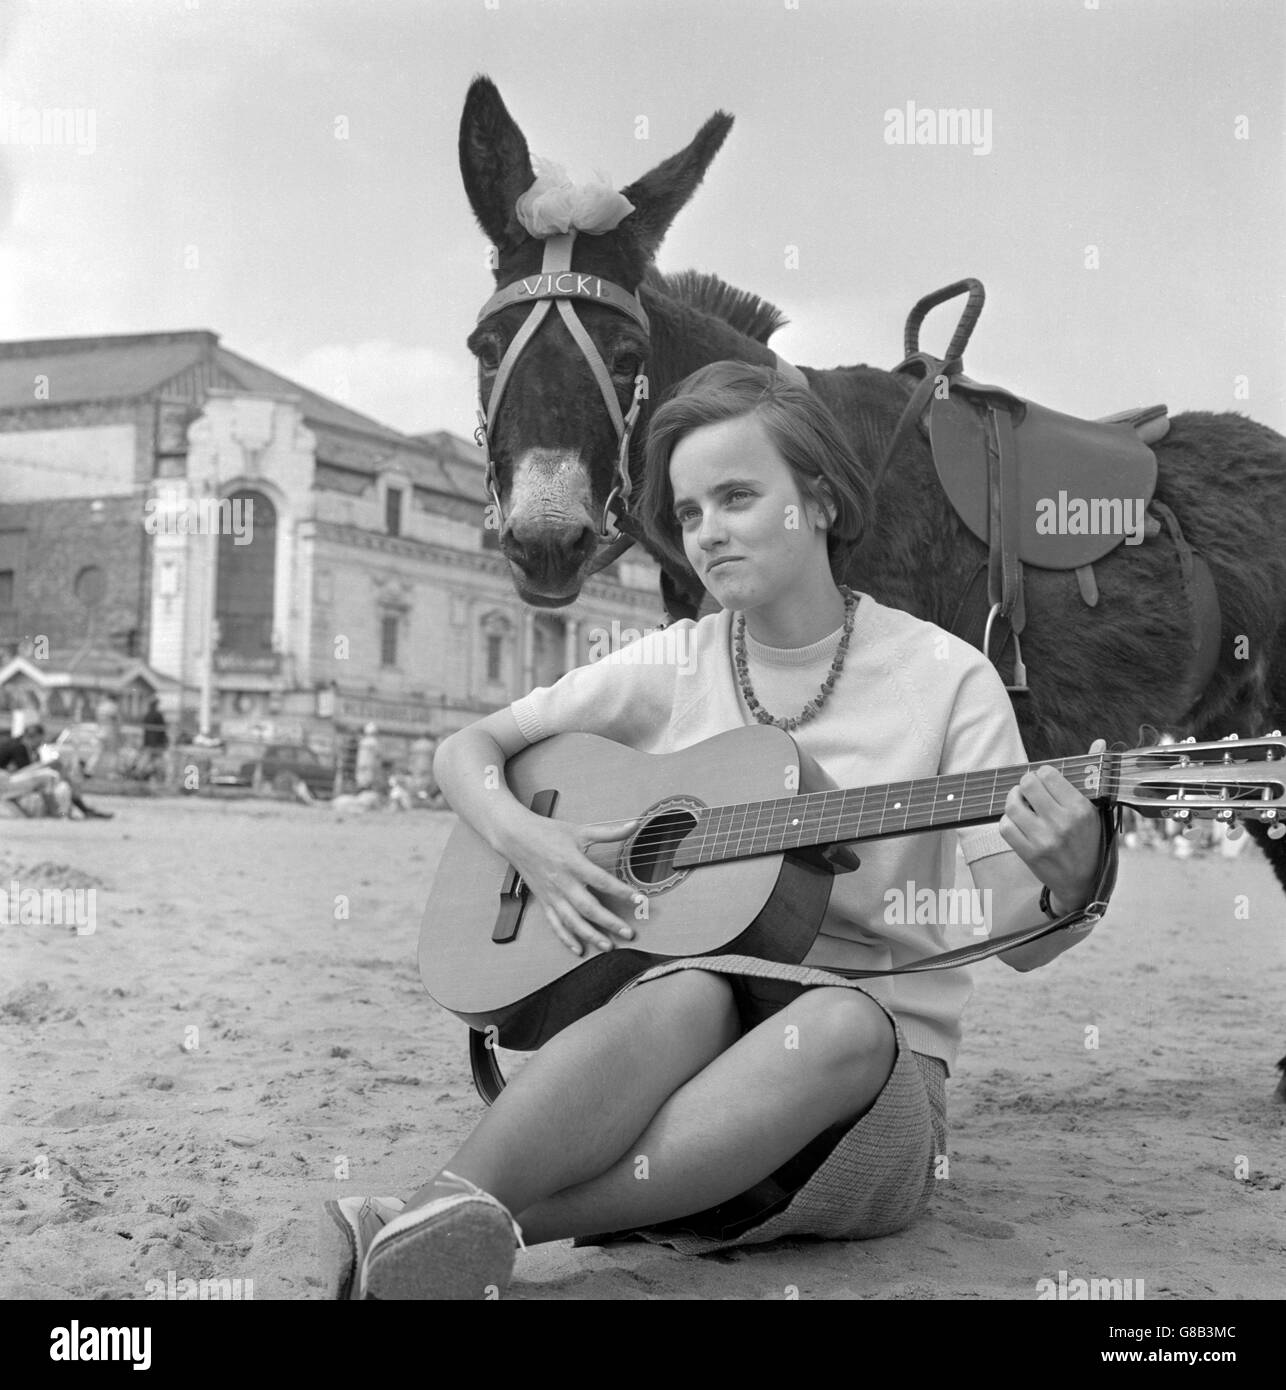 Vicki, der Esel, wird von der Musik der deutschen Studentin Heidi Heeren am Strand von Scarborough, Yorkshire, verzaubert. Heidi, die in Hull studiert, ist eine beliebte Folksängerin in Yorkshire Folk Clubs. Stockfoto